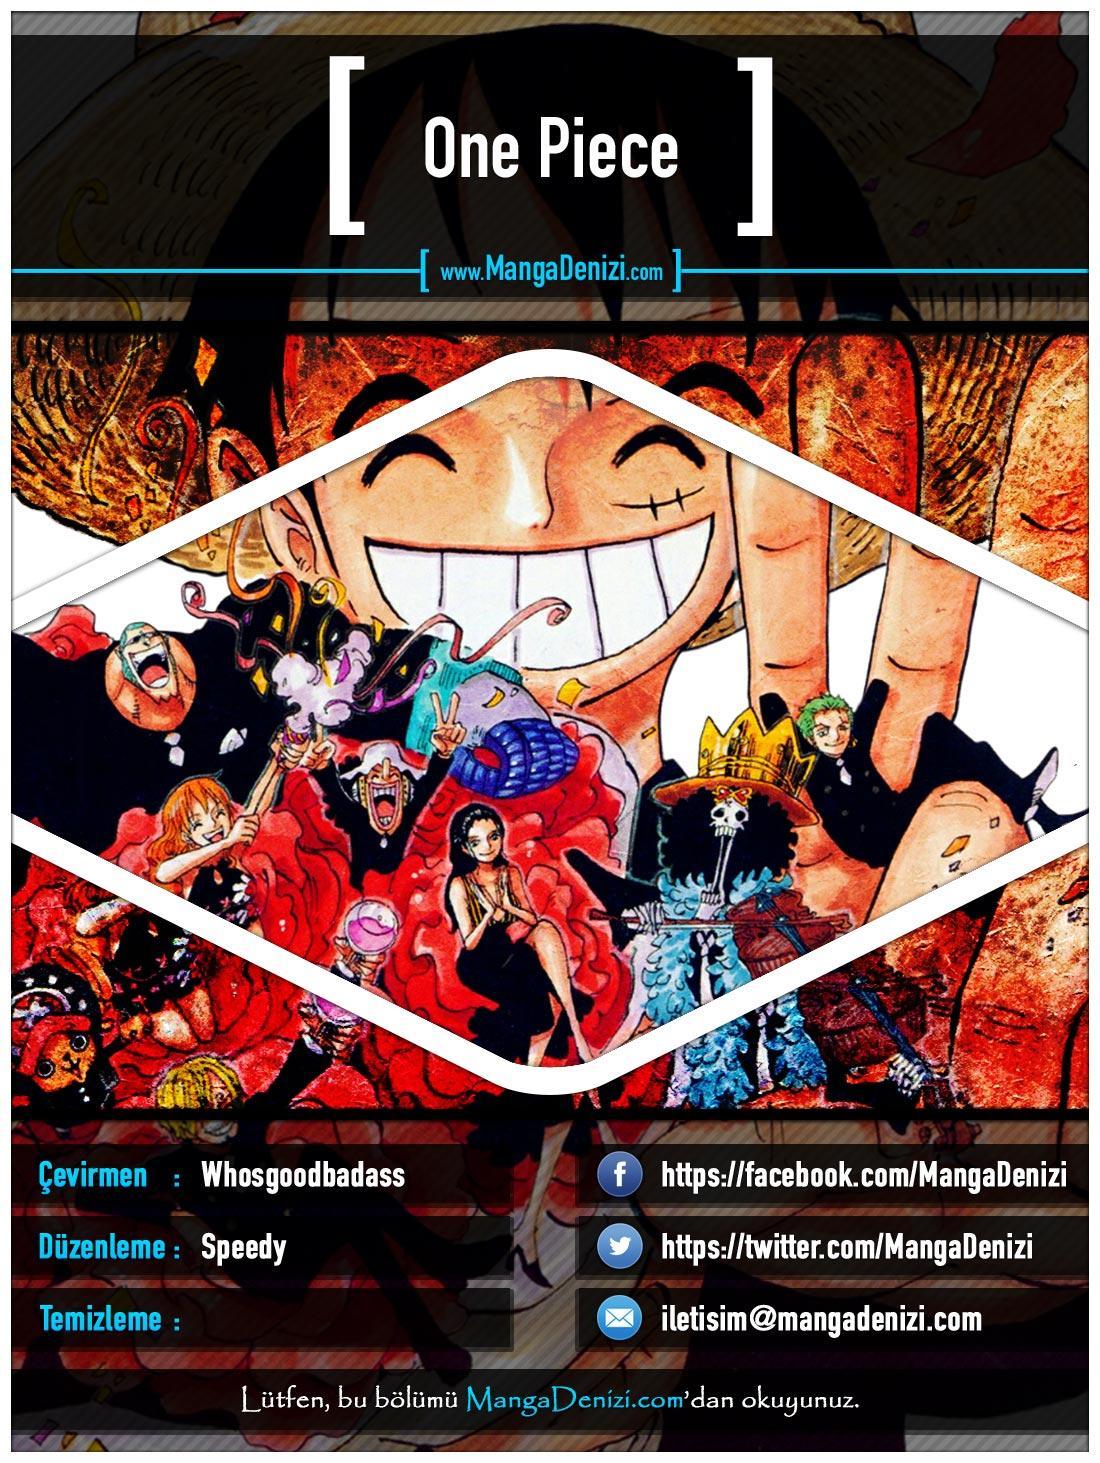 One Piece [Renkli] mangasının 0445 bölümünün 1. sayfasını okuyorsunuz.